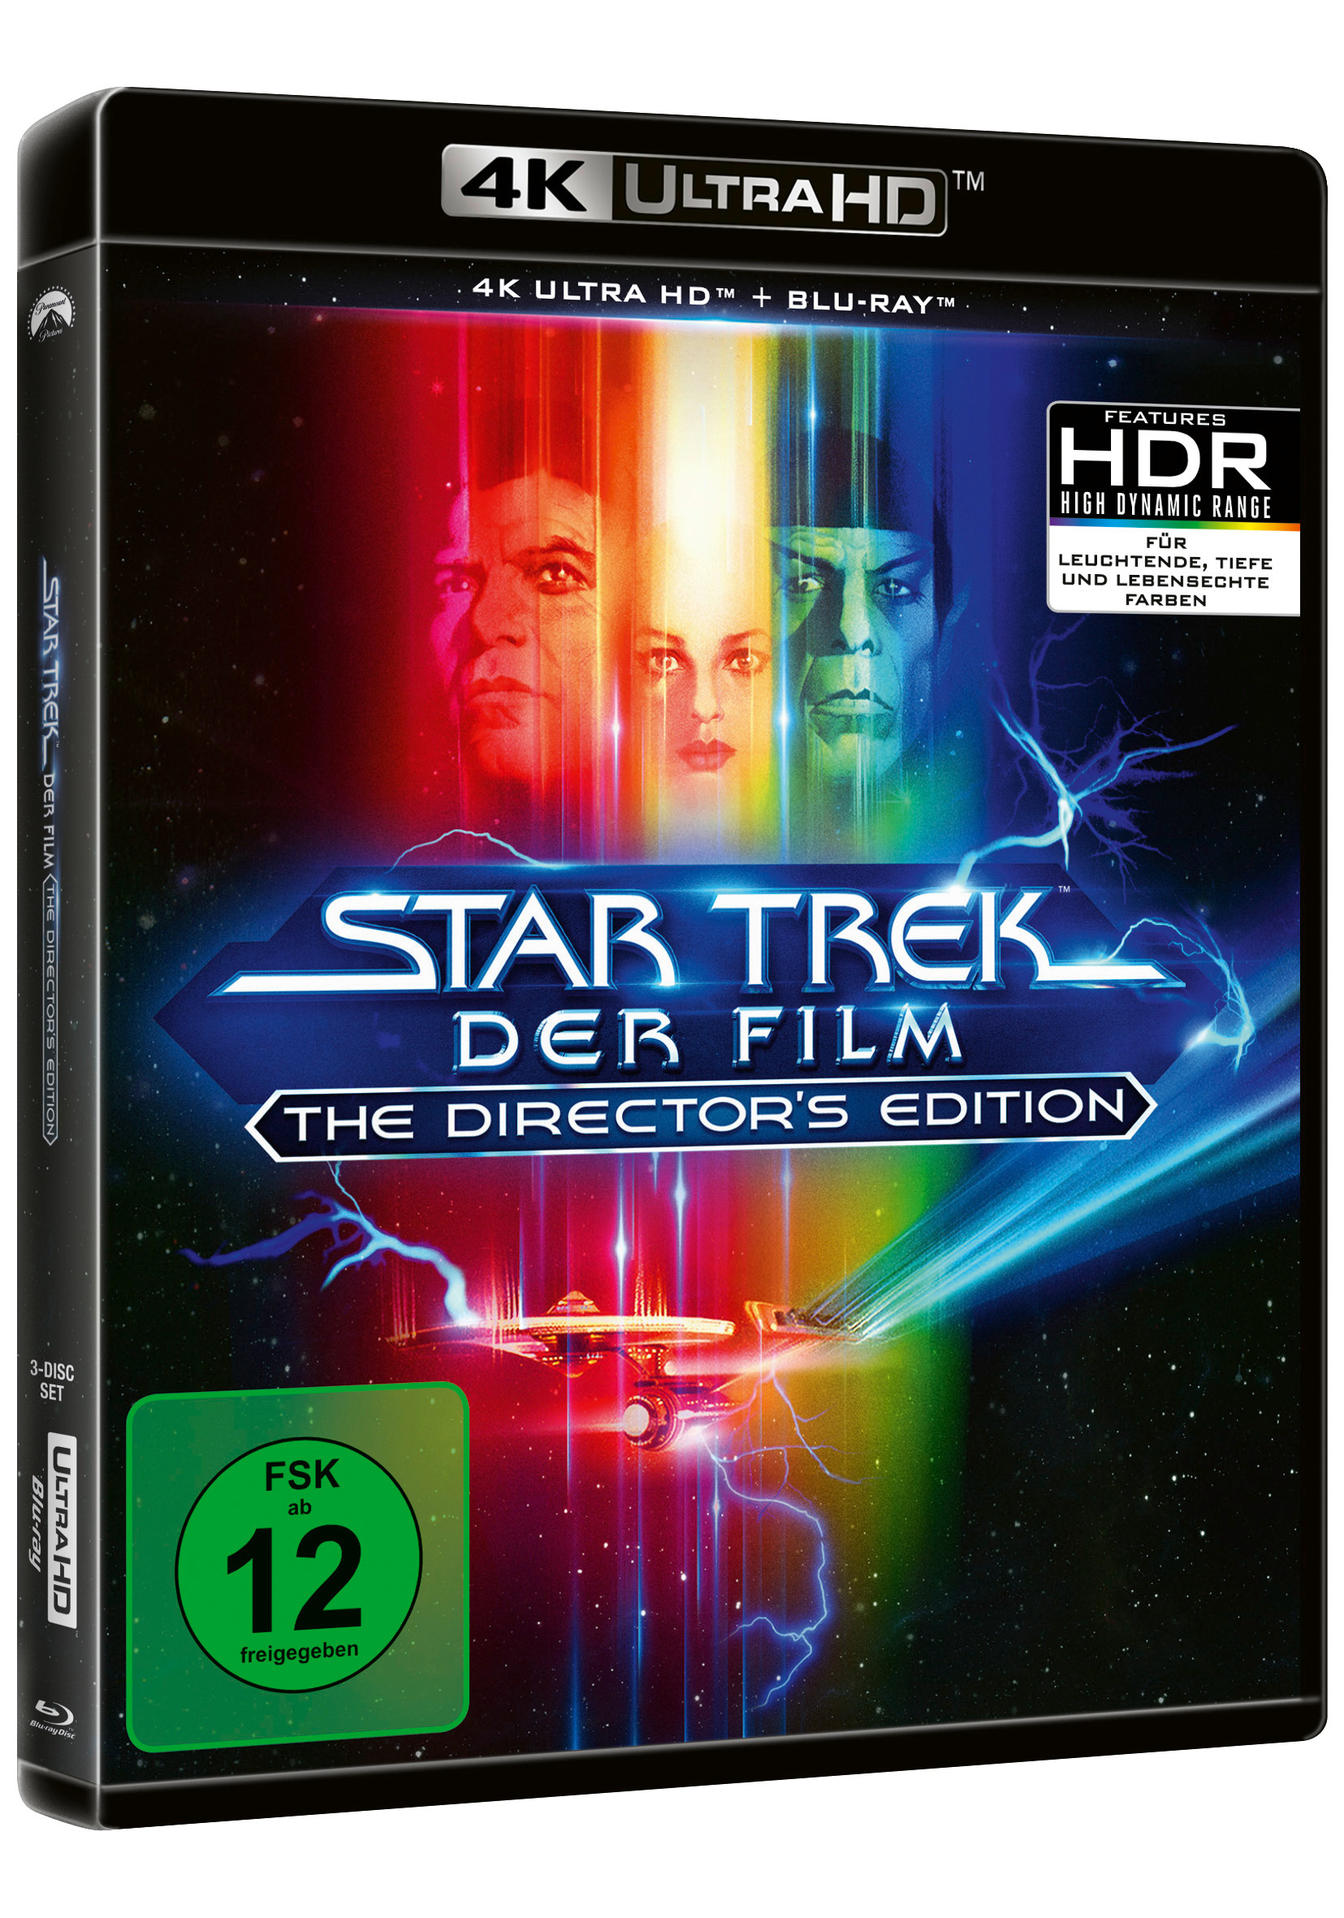 DIRECTOR Ultra FILM-THE TREK CUT Blu-ray STAR S 4K I-DER HD